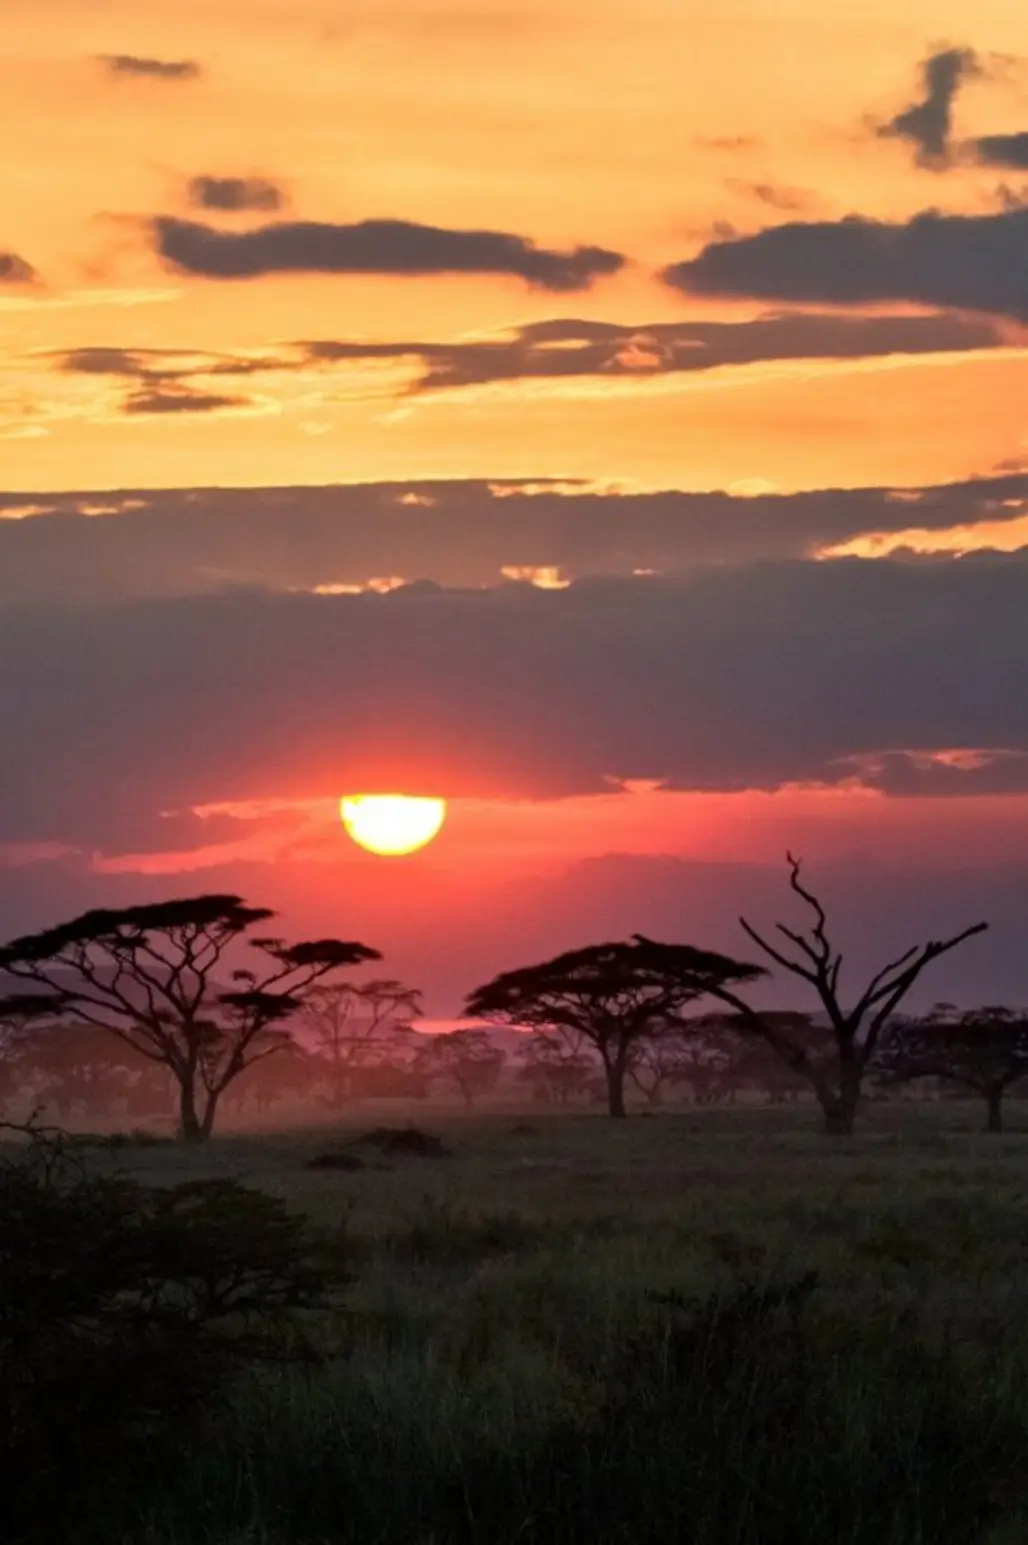 The Serengeti, Africa